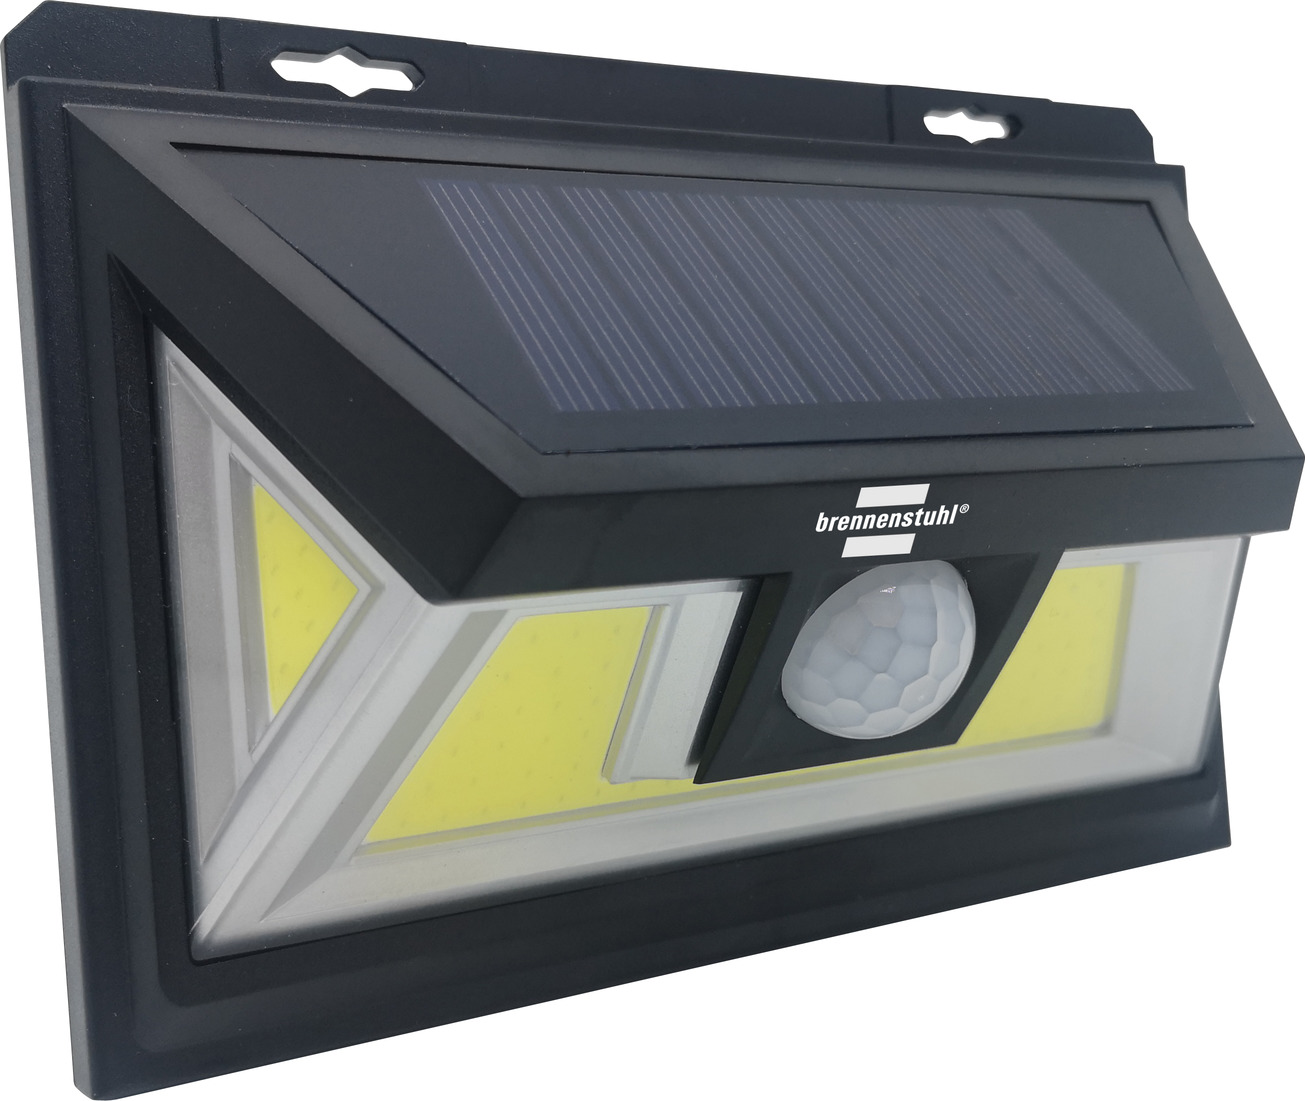 Sol - Solar Powered Motion Sensor Outdoor Light